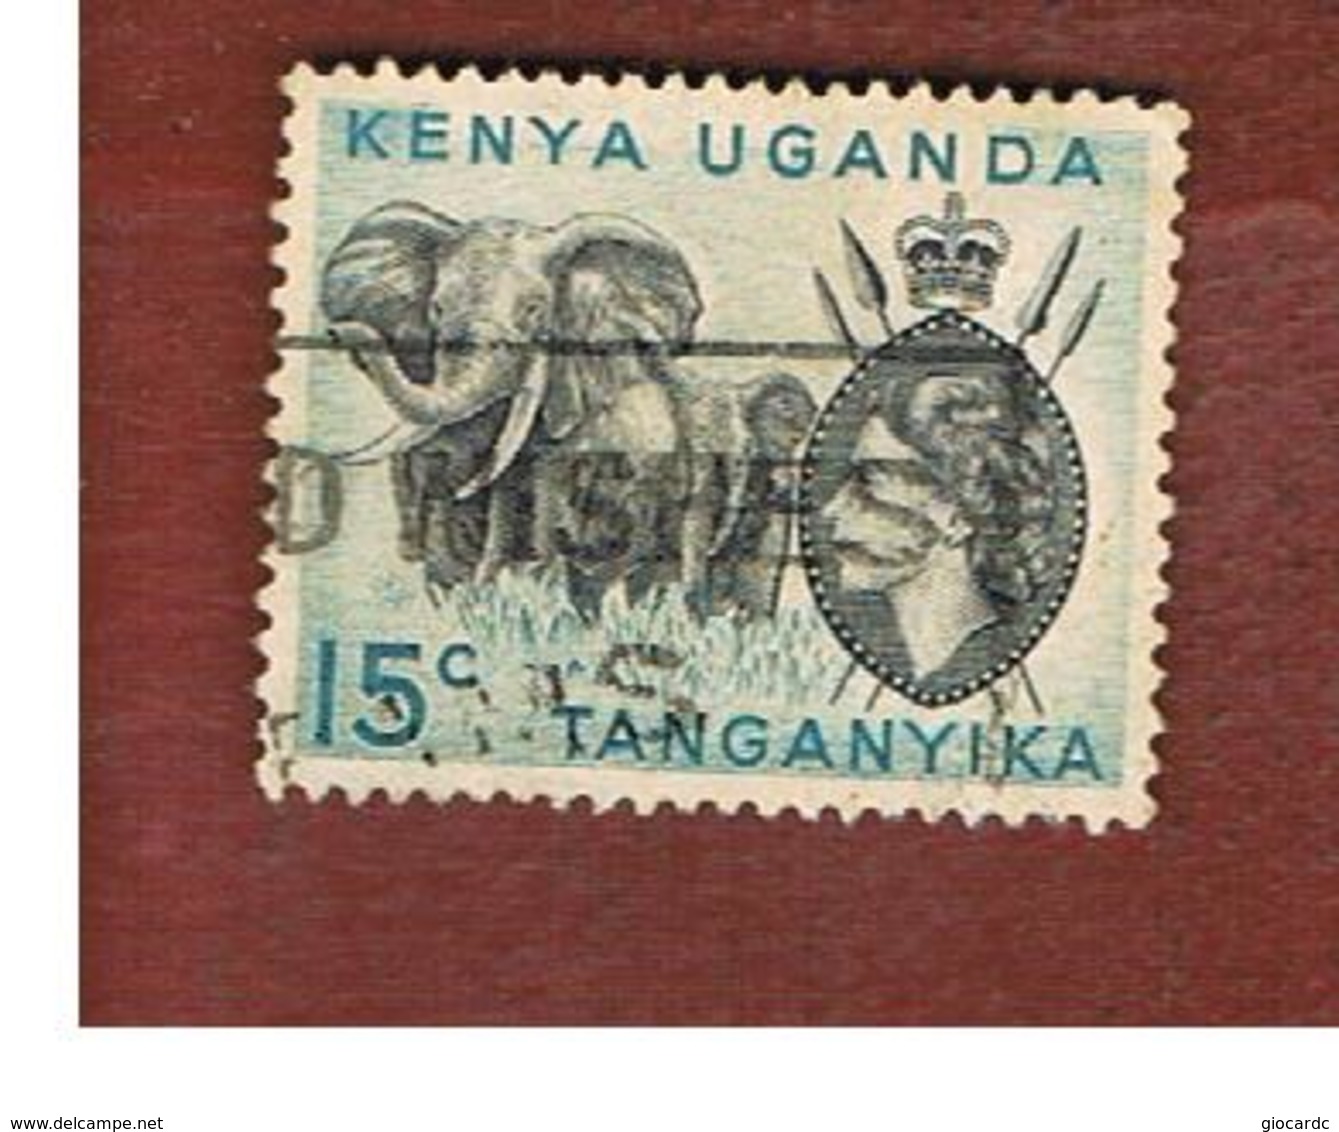 KENYA, UGANDA & TANGANYIKA  - SG 169 -  1958 ANIMALS: AFRICAN ELEPHANT   -USED° - Kenya, Uganda & Tanganyika